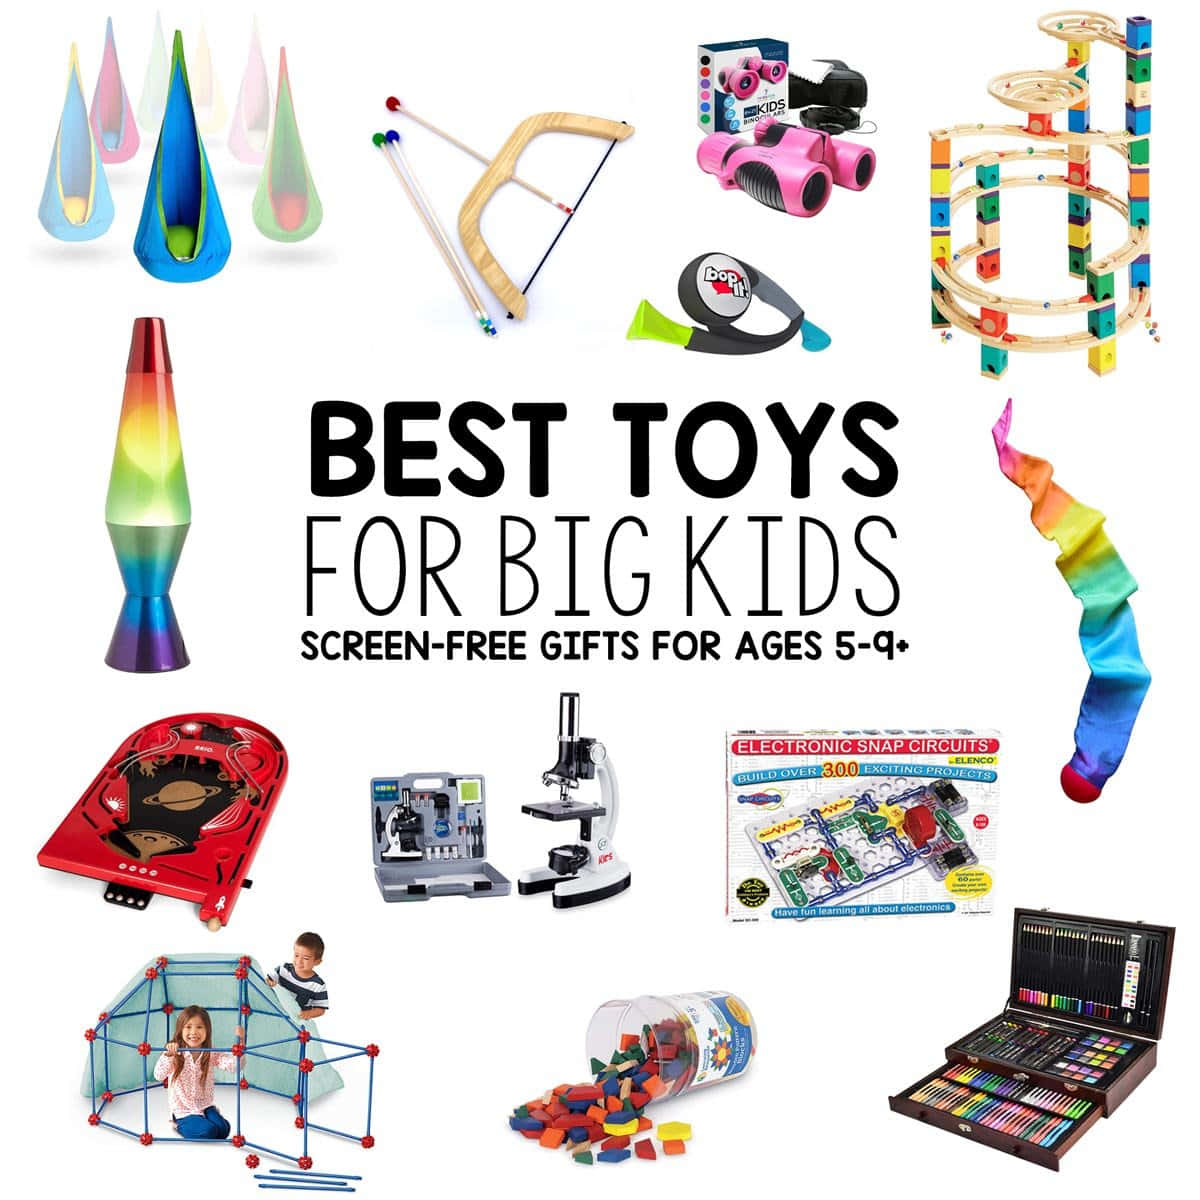 Diebesten Spielzeuge Für Große Kinder - Bildschirmfreie Geschenke Für Kinder Im Alter Von 8 Bis 12 Jahren.